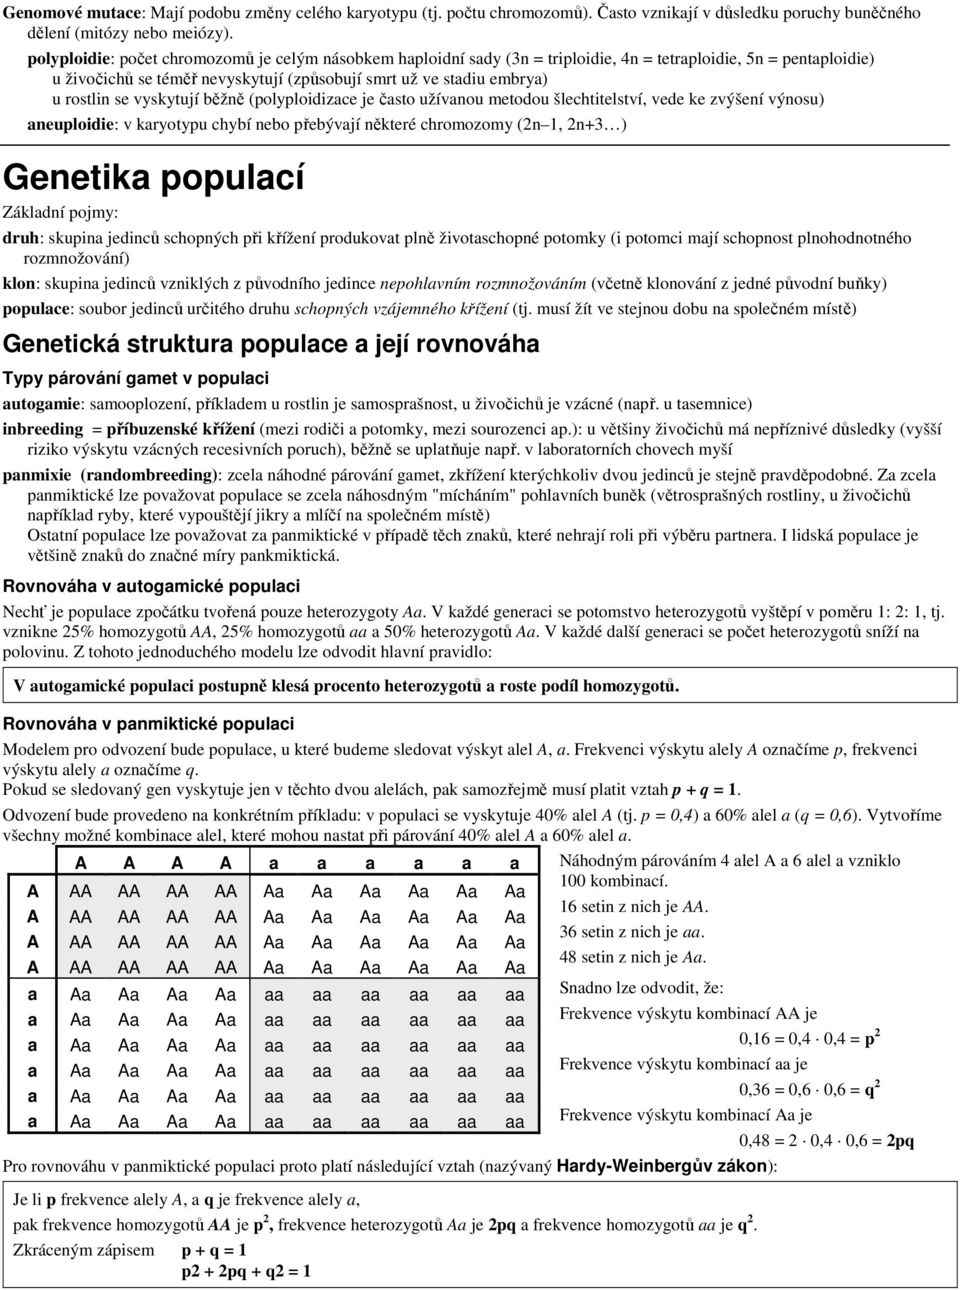 se vyskytují běžně (polyploidizace je často užívanou metodou šlechtitelství, vede ke zvýšení výnosu) aneuploidie: v karyotypu chybí nebo přebývají některé chromozomy (2n 1, 2n+3 ) Genetika populací